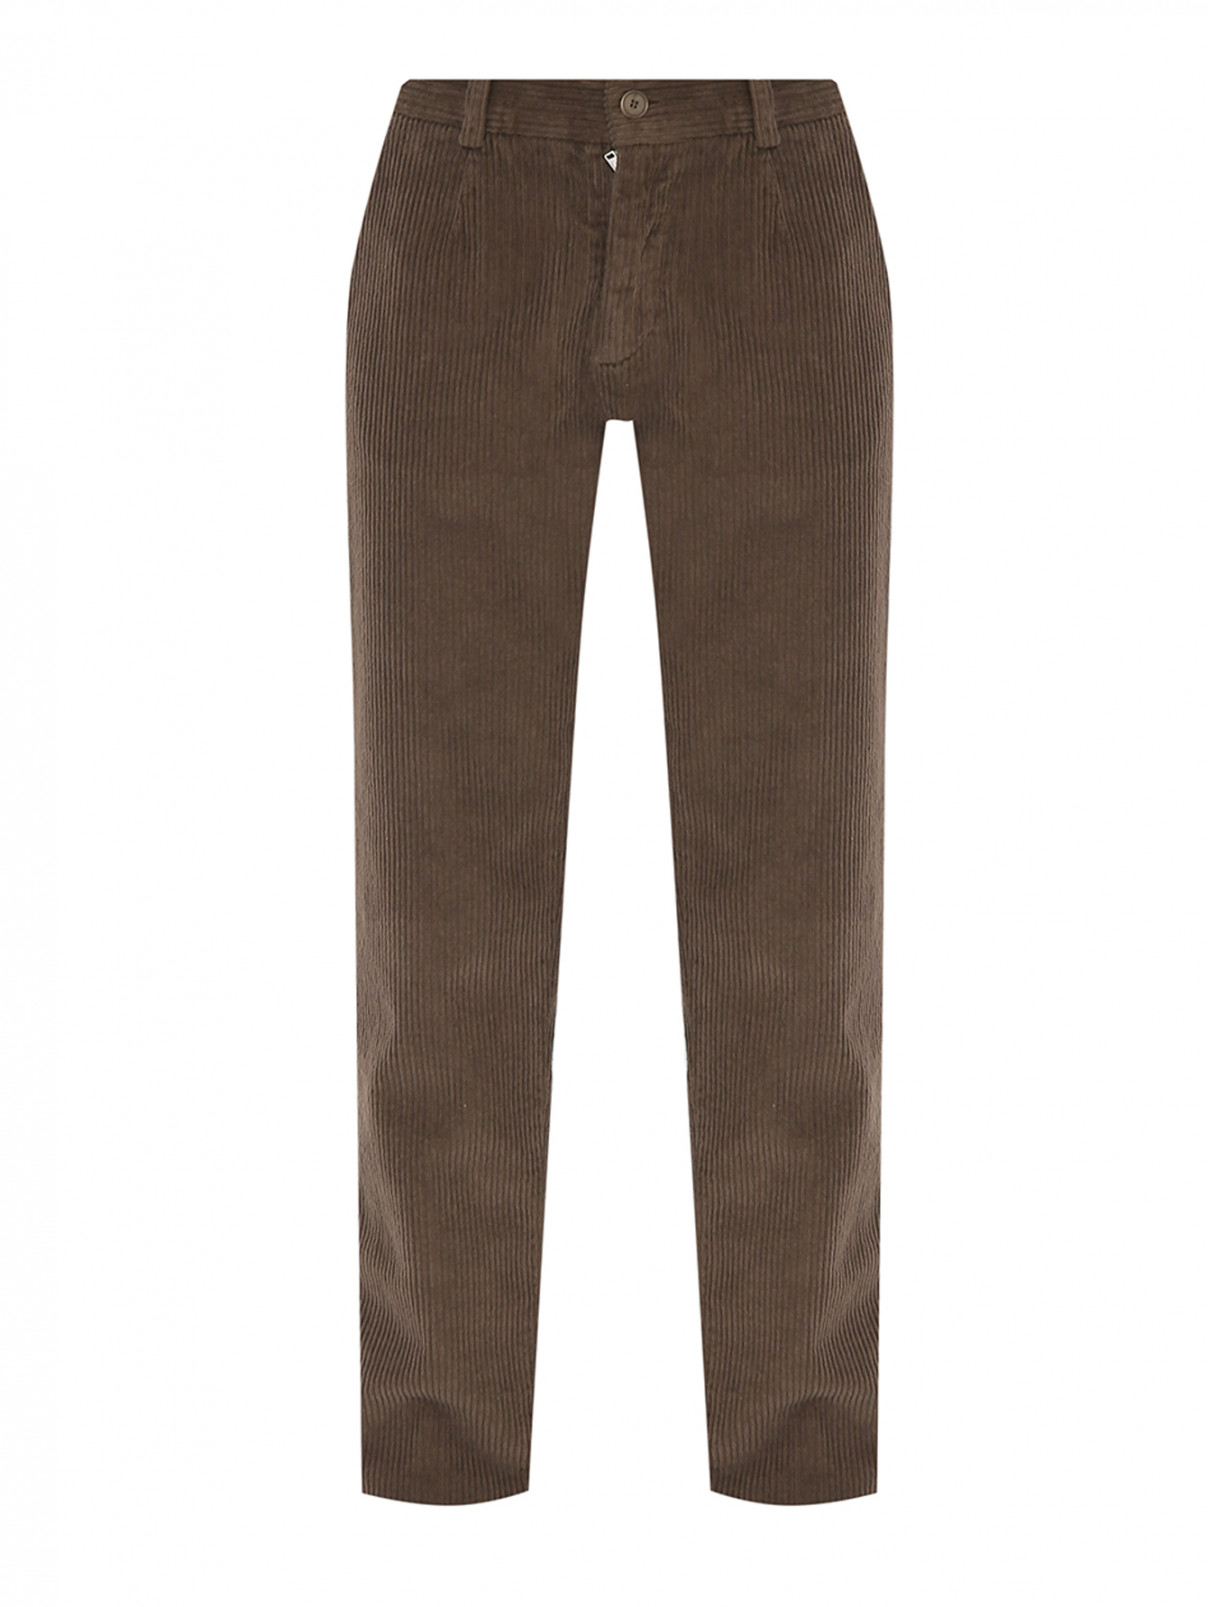 Вельветовые брюки с карманами Aspesi  –  Общий вид  – Цвет:  Коричневый